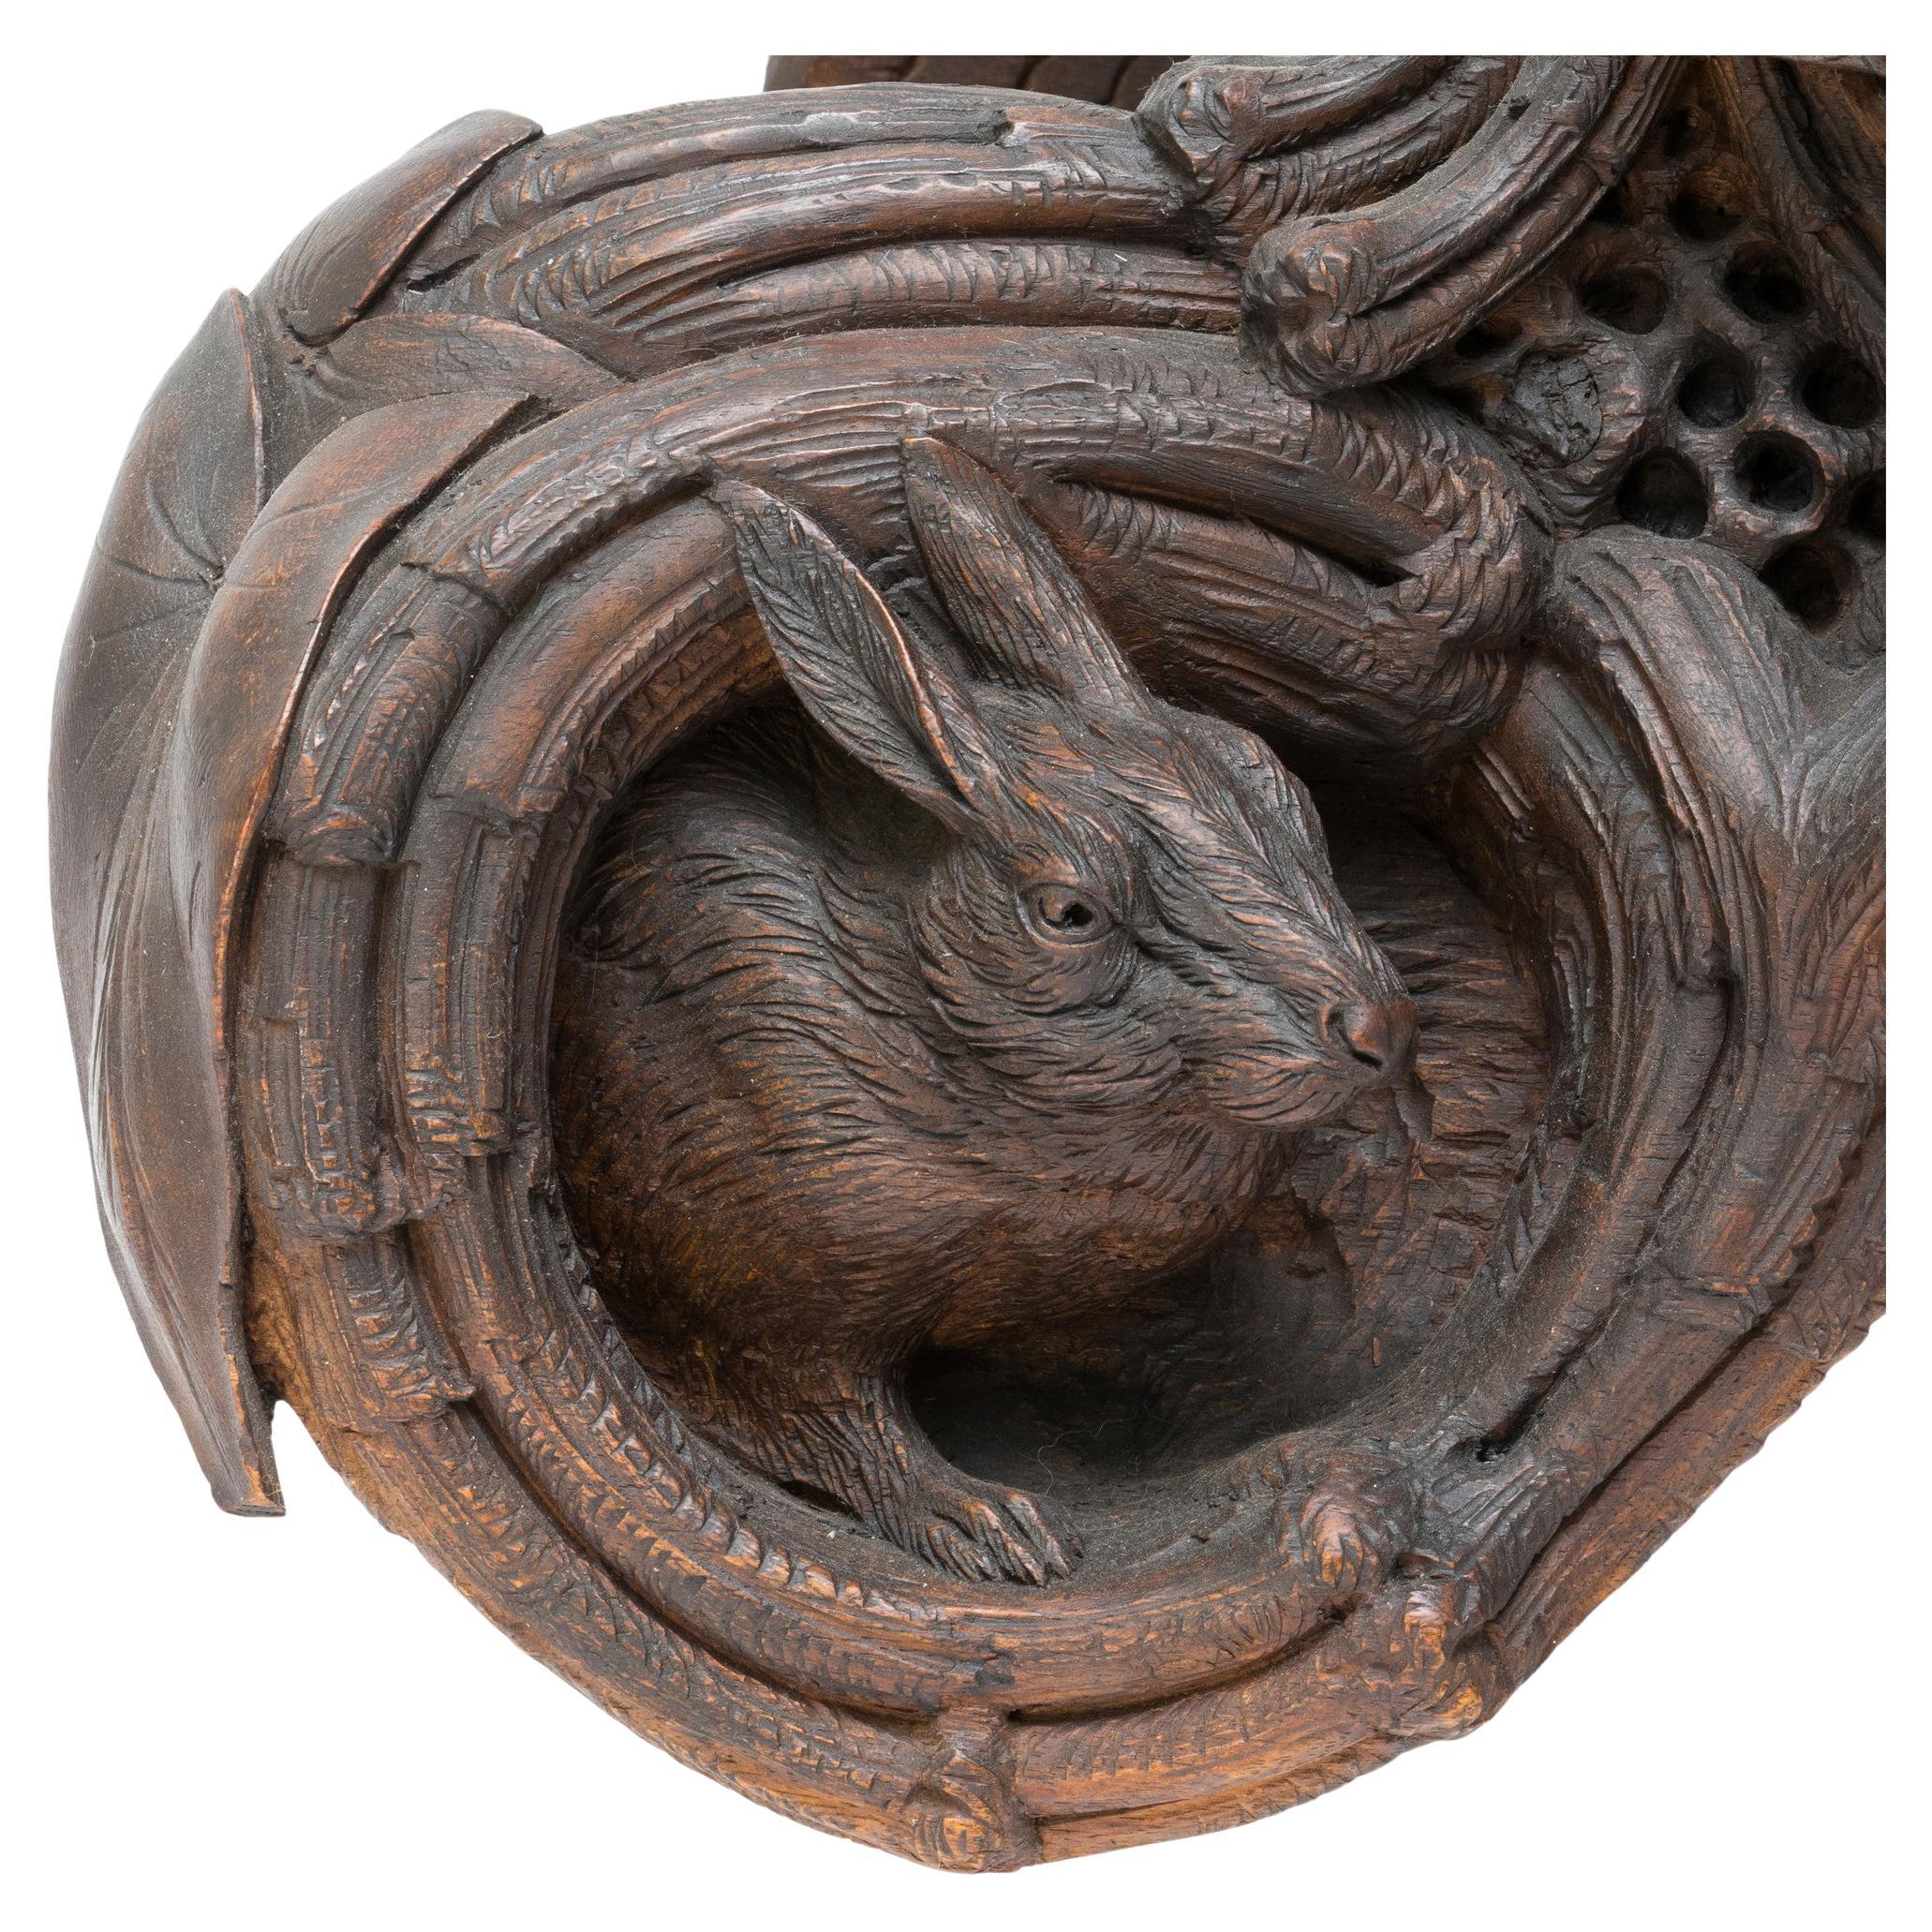 Pendule de cheminée en bois suisse sculpté de la Forêt-Noire avec un design élaboré. Le mâle et la biche chamoisés sont représentés sur un épi de faîtage au sommet d'une formation rocheuse. En bas, trois tétras, un lapin et des animaux nuisibles